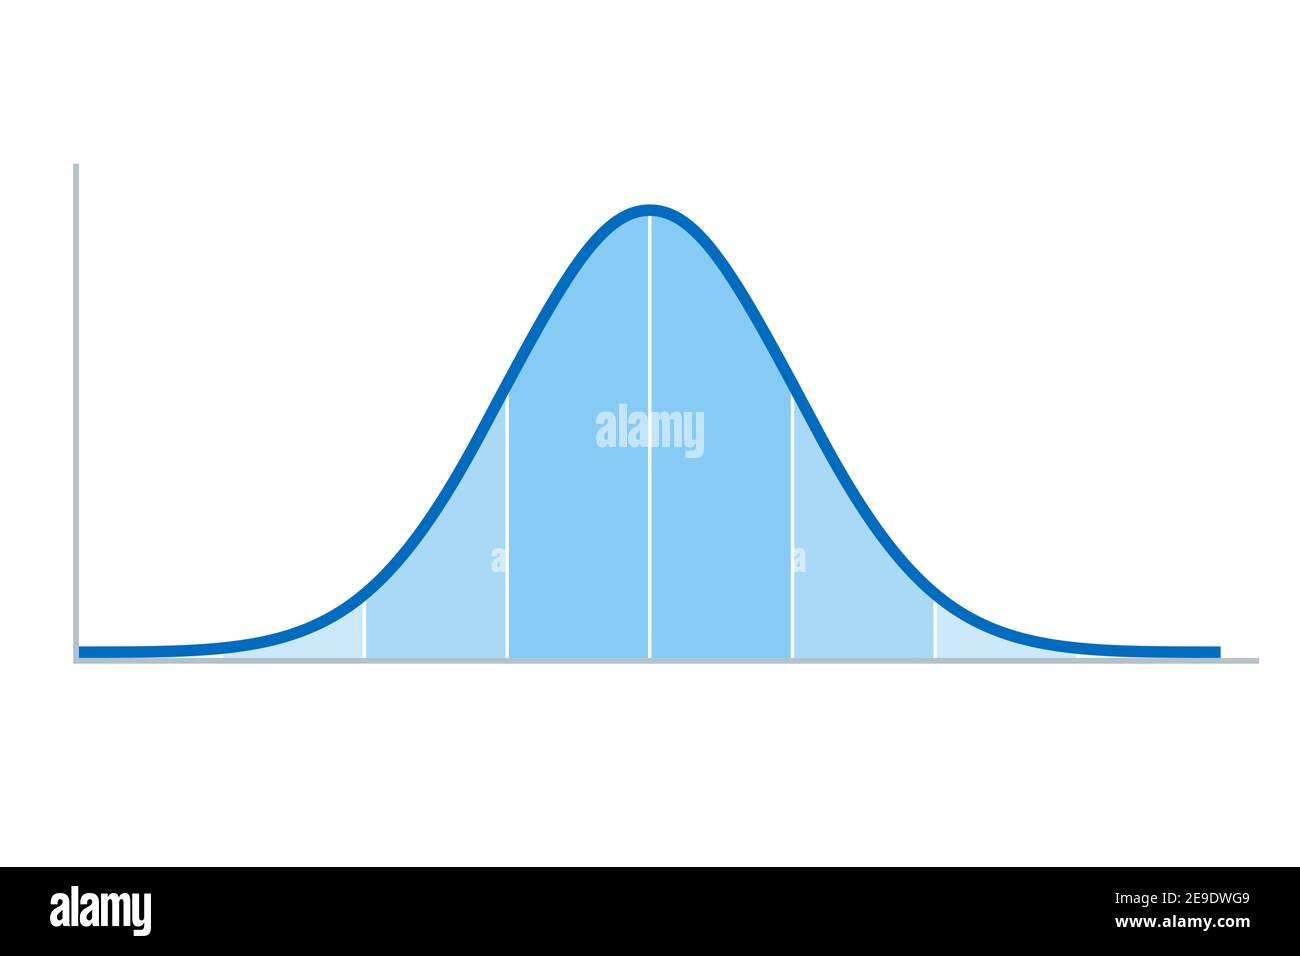 Distribution gaussienne. Distribution normale standard, parfois appelée officieusement courbe de cloche, utilisée dans la théorie des probabilités et les statistiques. Banque D'Images